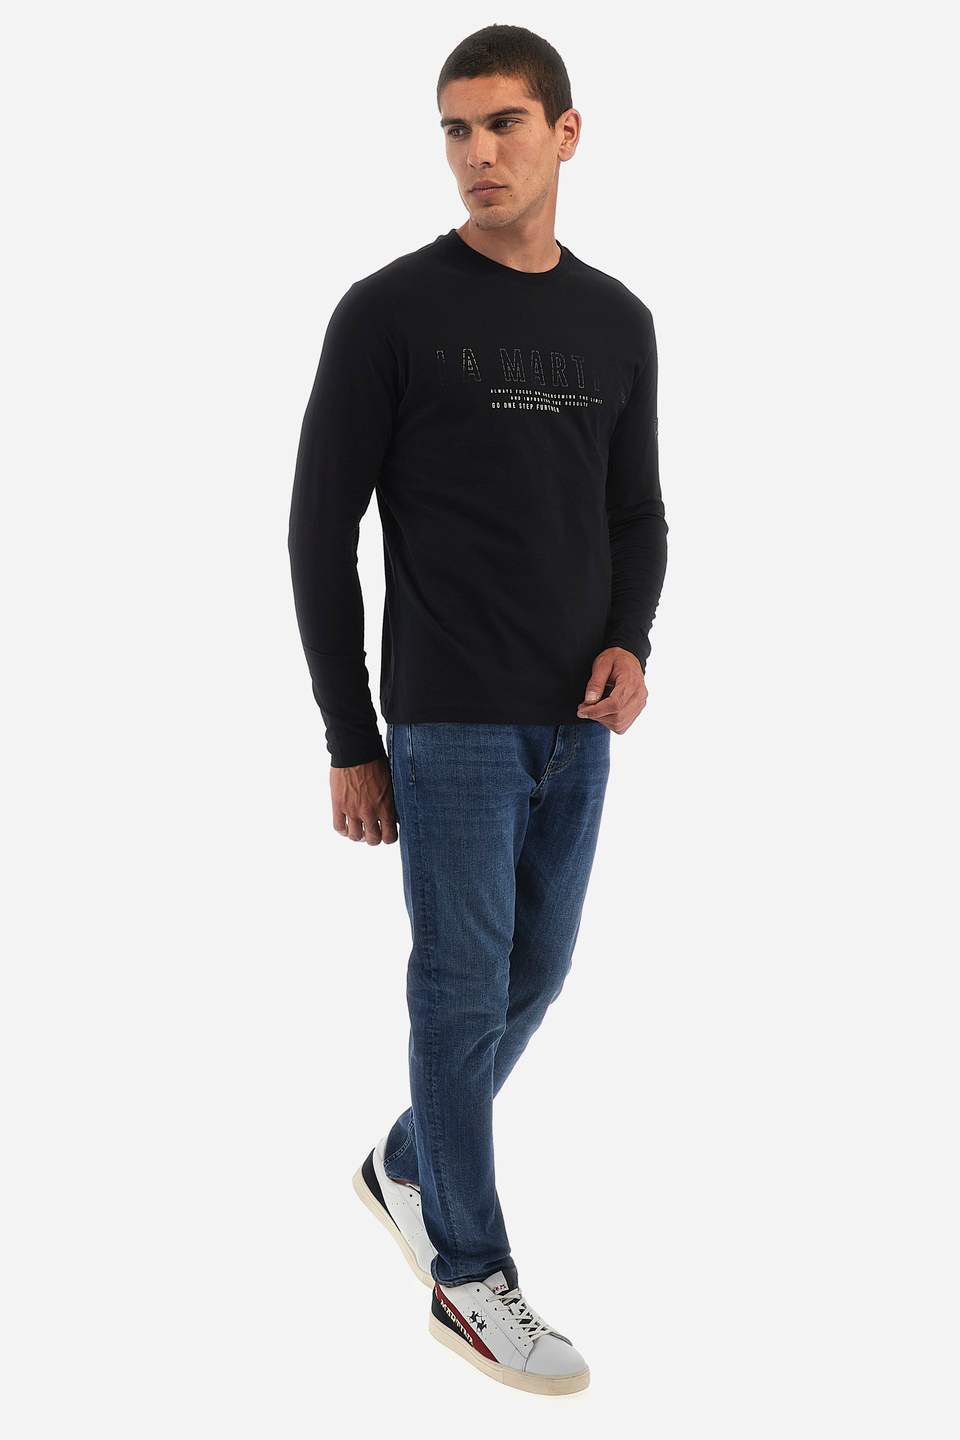 T-shirt homme coupe classique - Willmer | La Martina - Official Online Shop